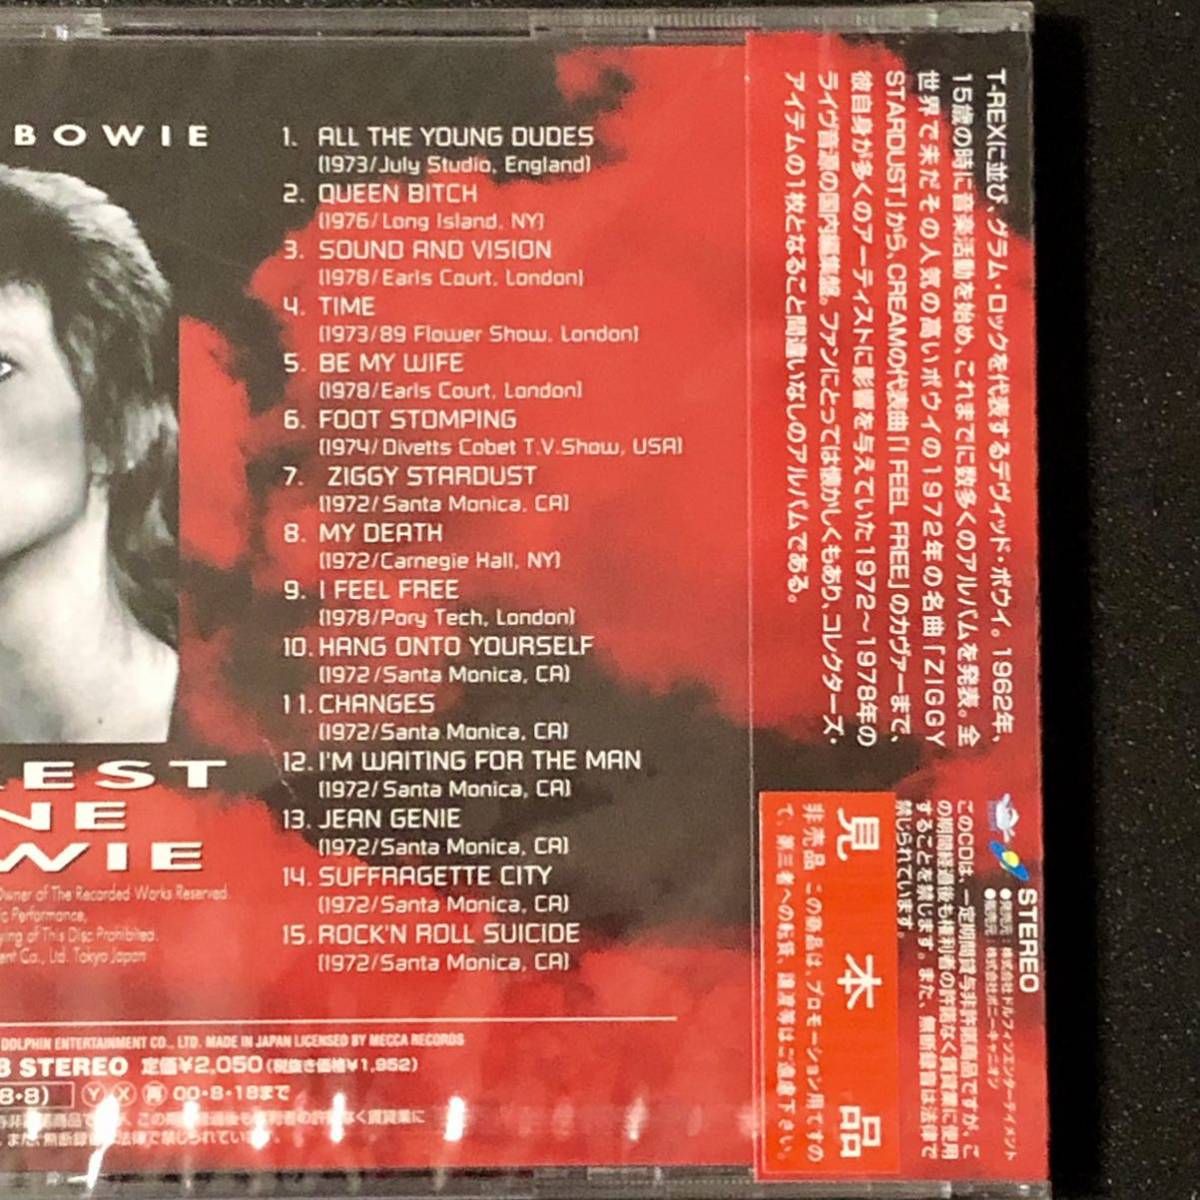 廃盤 帯付新品★CD「David Bowie レアエスト・ワン・ボウイ」★デヴィッド・ボウイ Rarest One Bowie/All The Young Dudes/Ziggy Stardust